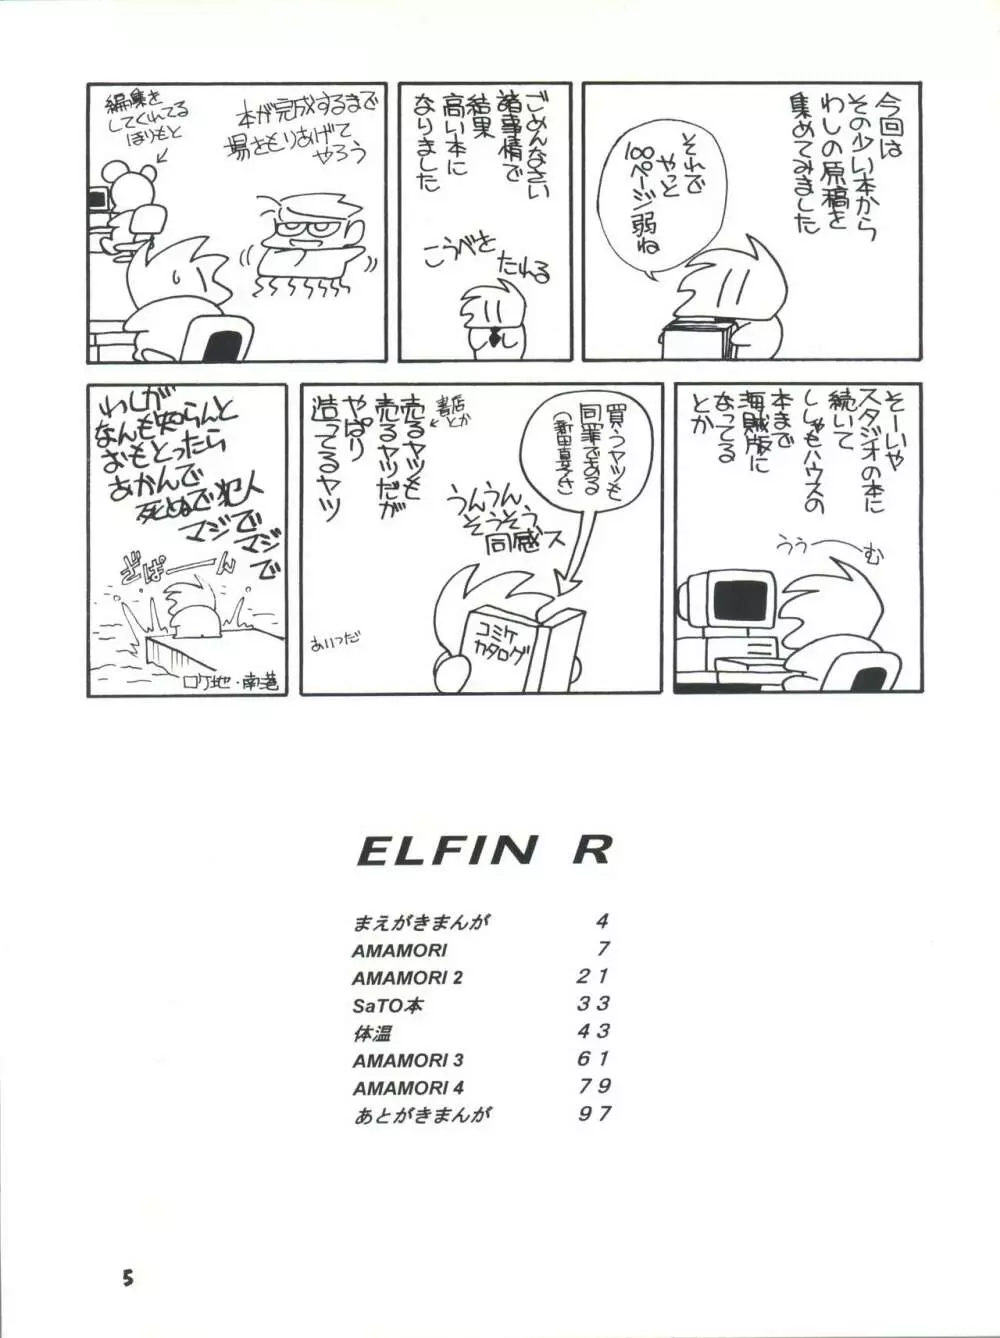 Elfin R - page5